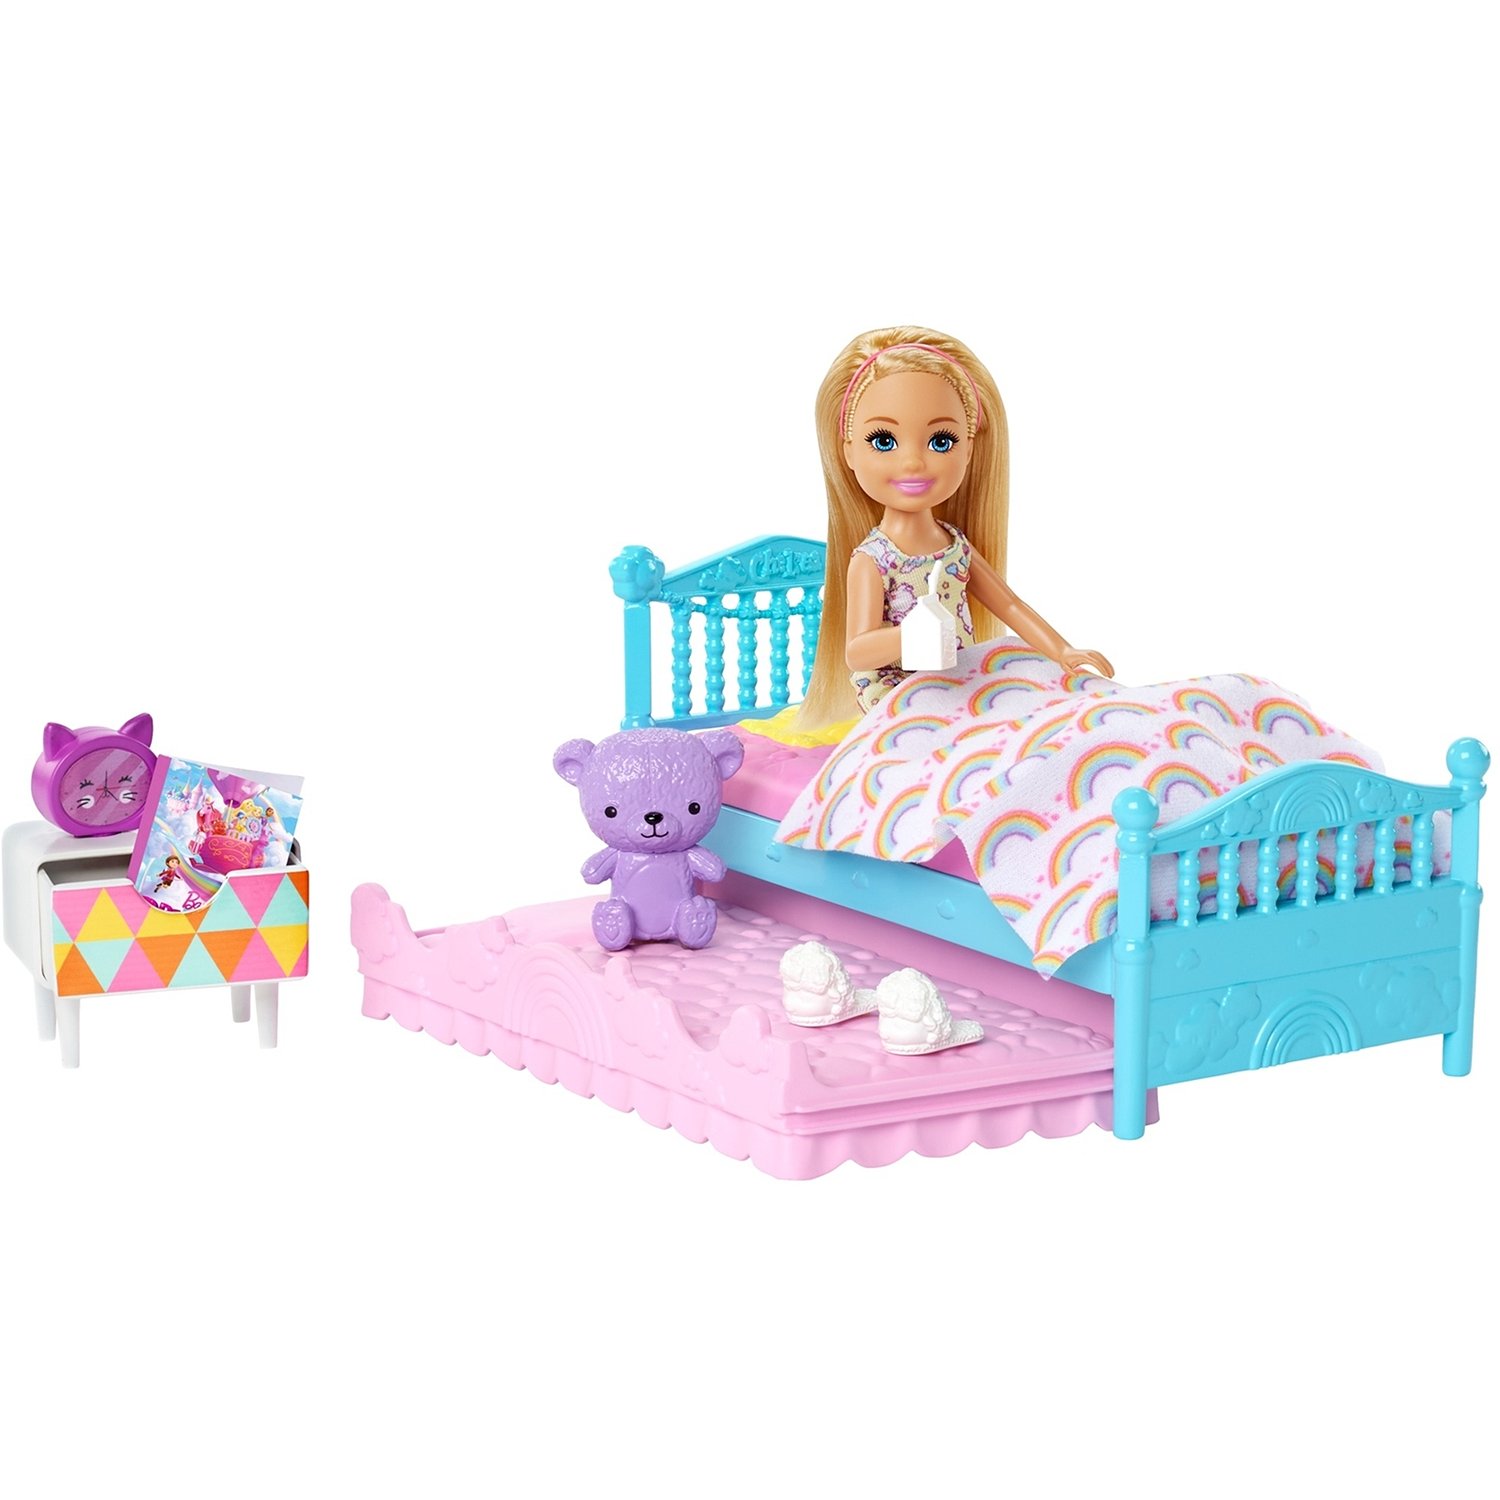 Кукла Barbie Челси и набор мебели спальня, 12 см, fxg83